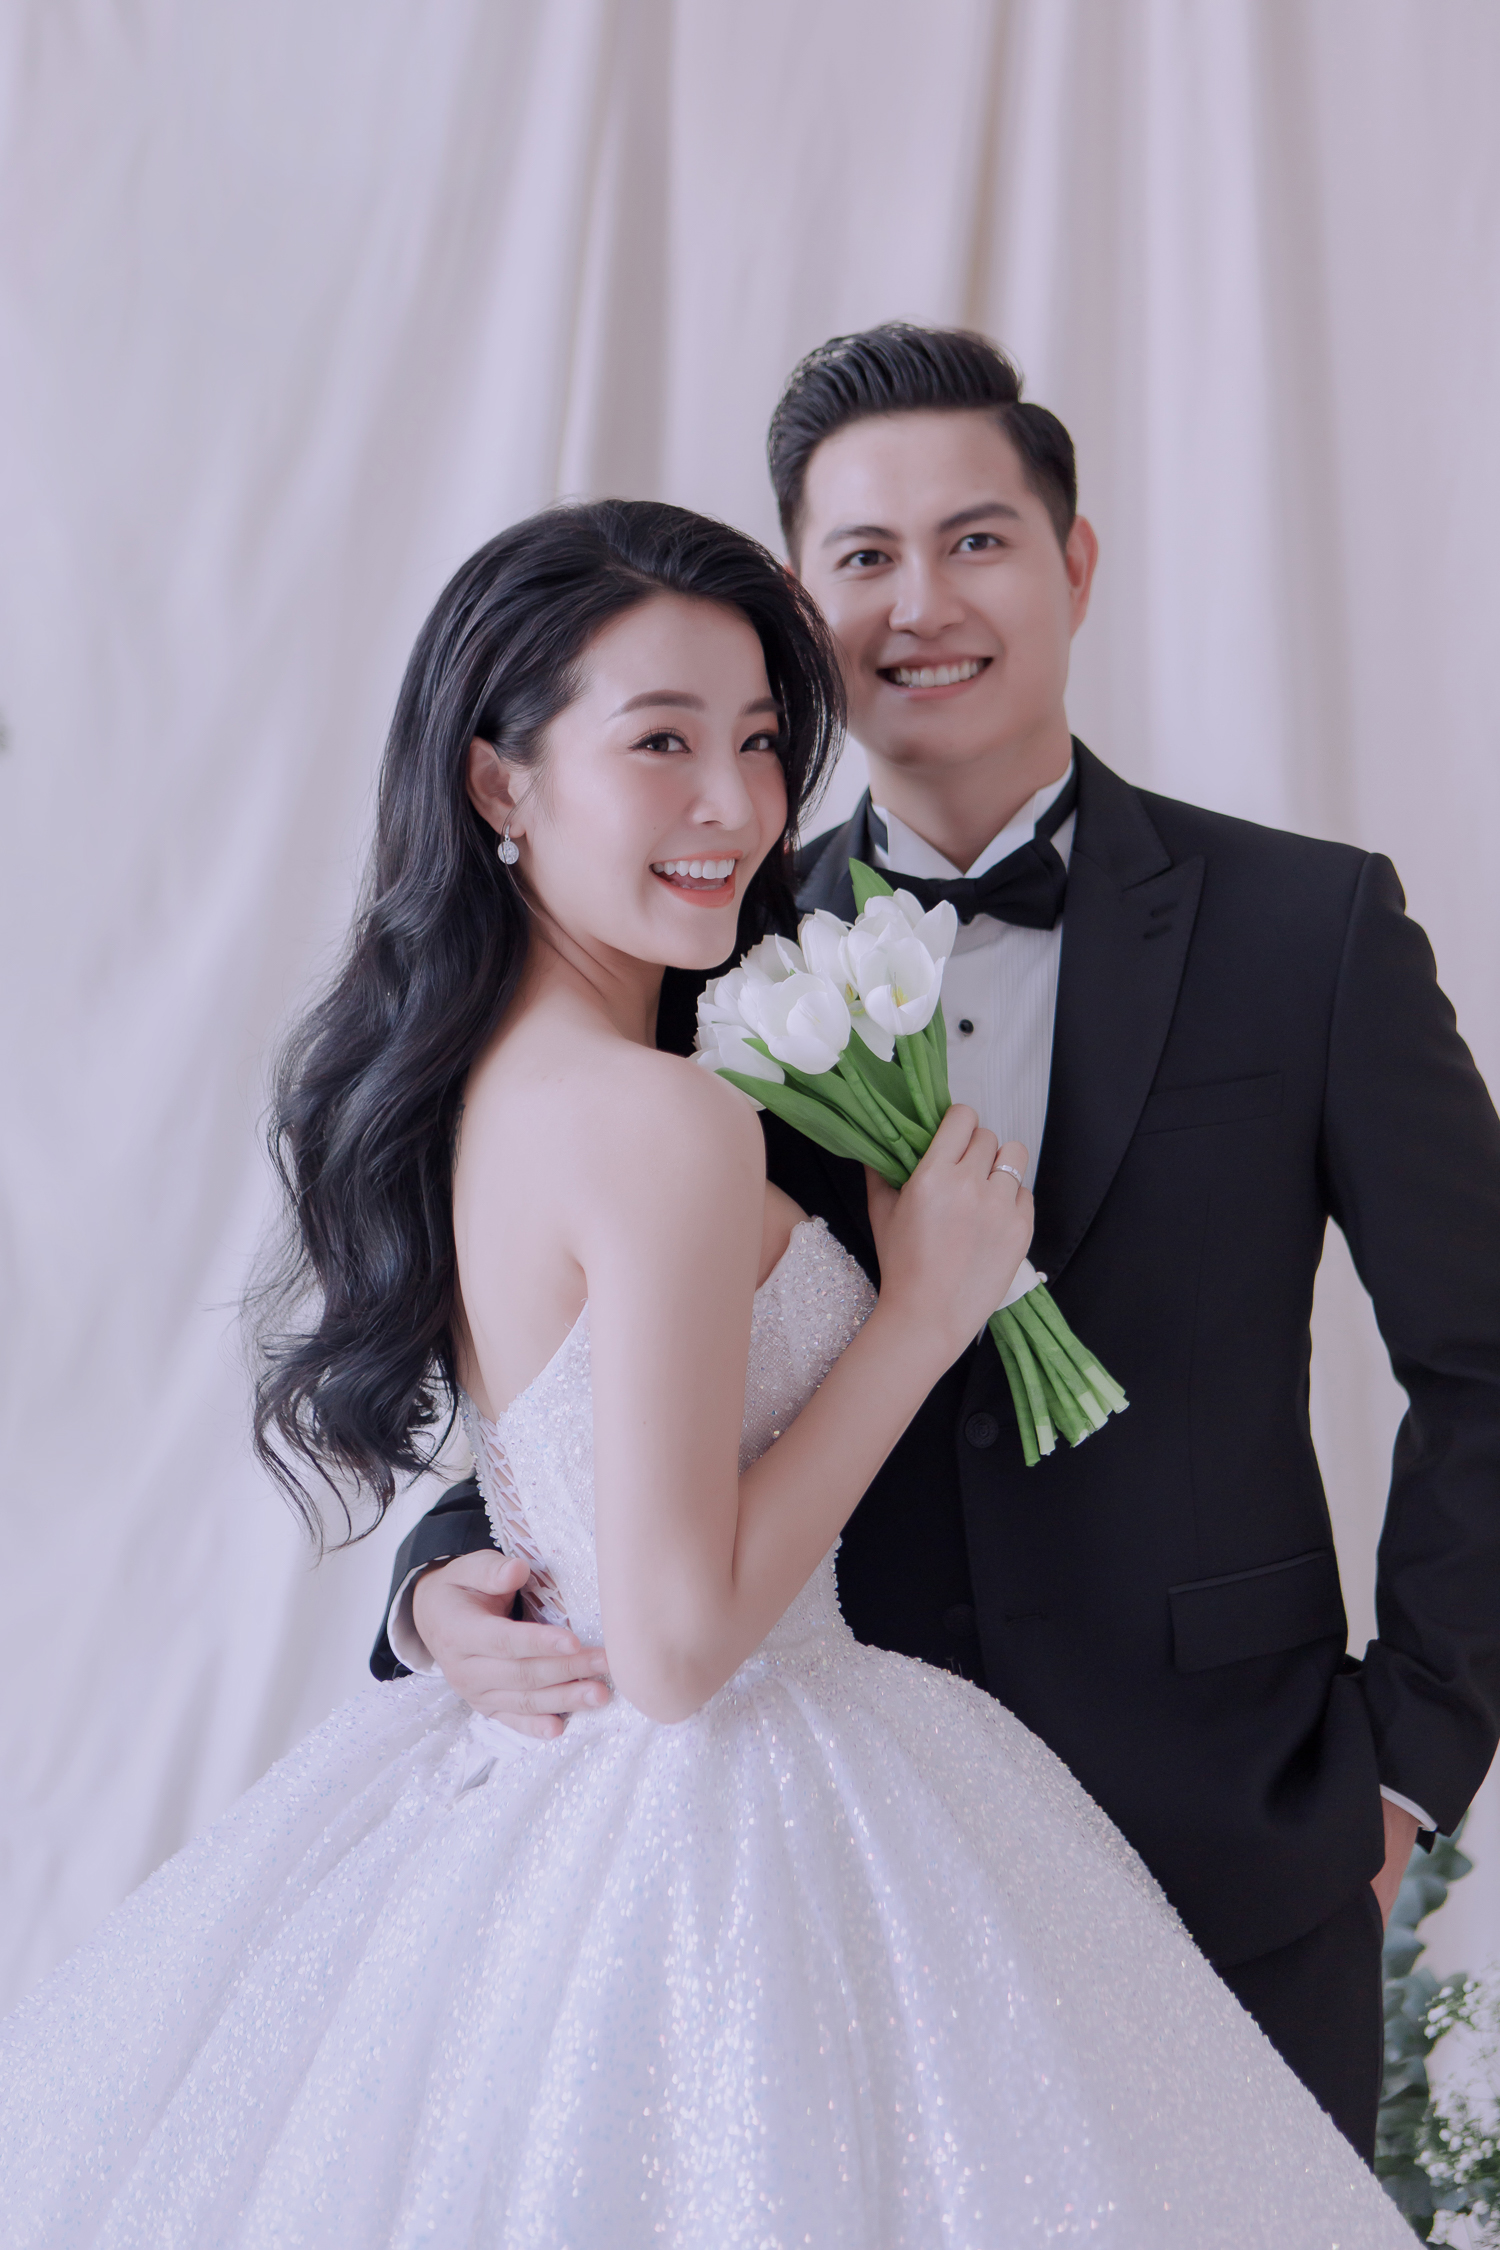 Hé lộ bộ ảnh cưới của Karen Nguyễn cùng ông xã: Áo cưới được đính kết hơn 1000 viên pha lê